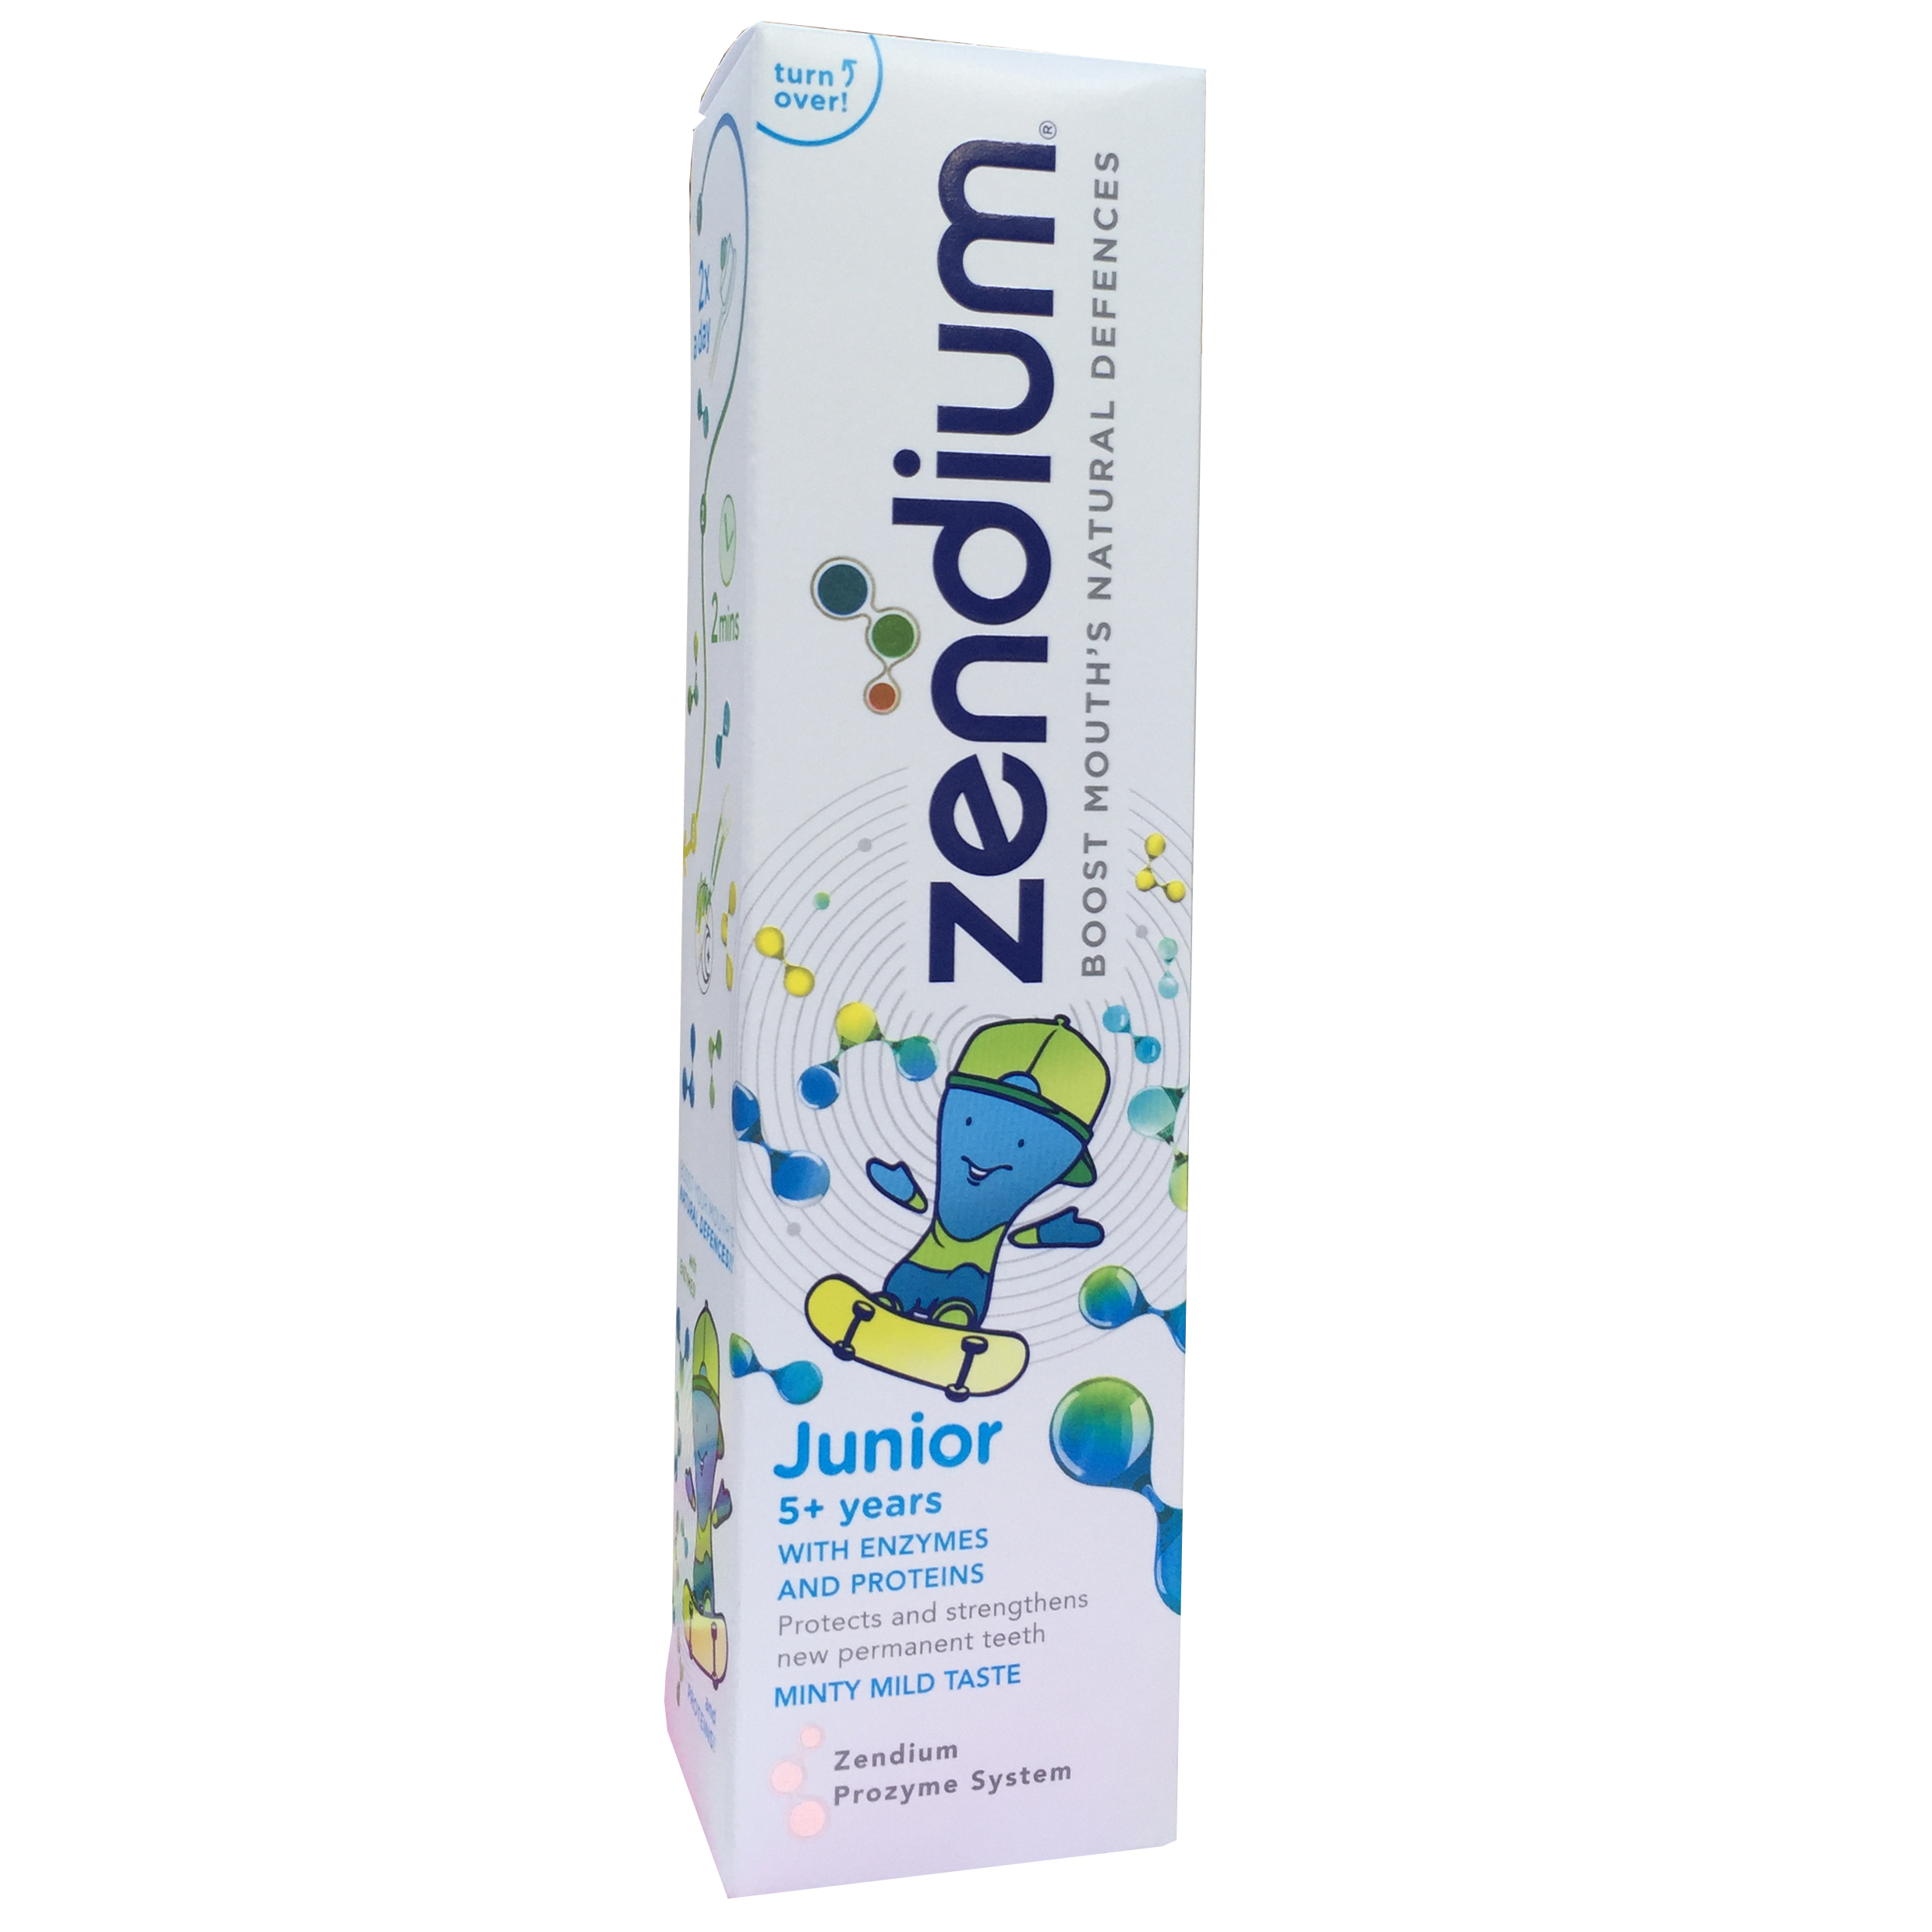 Pasta de dinti Zendium Junior 5+ani, 75 ml, Unilever